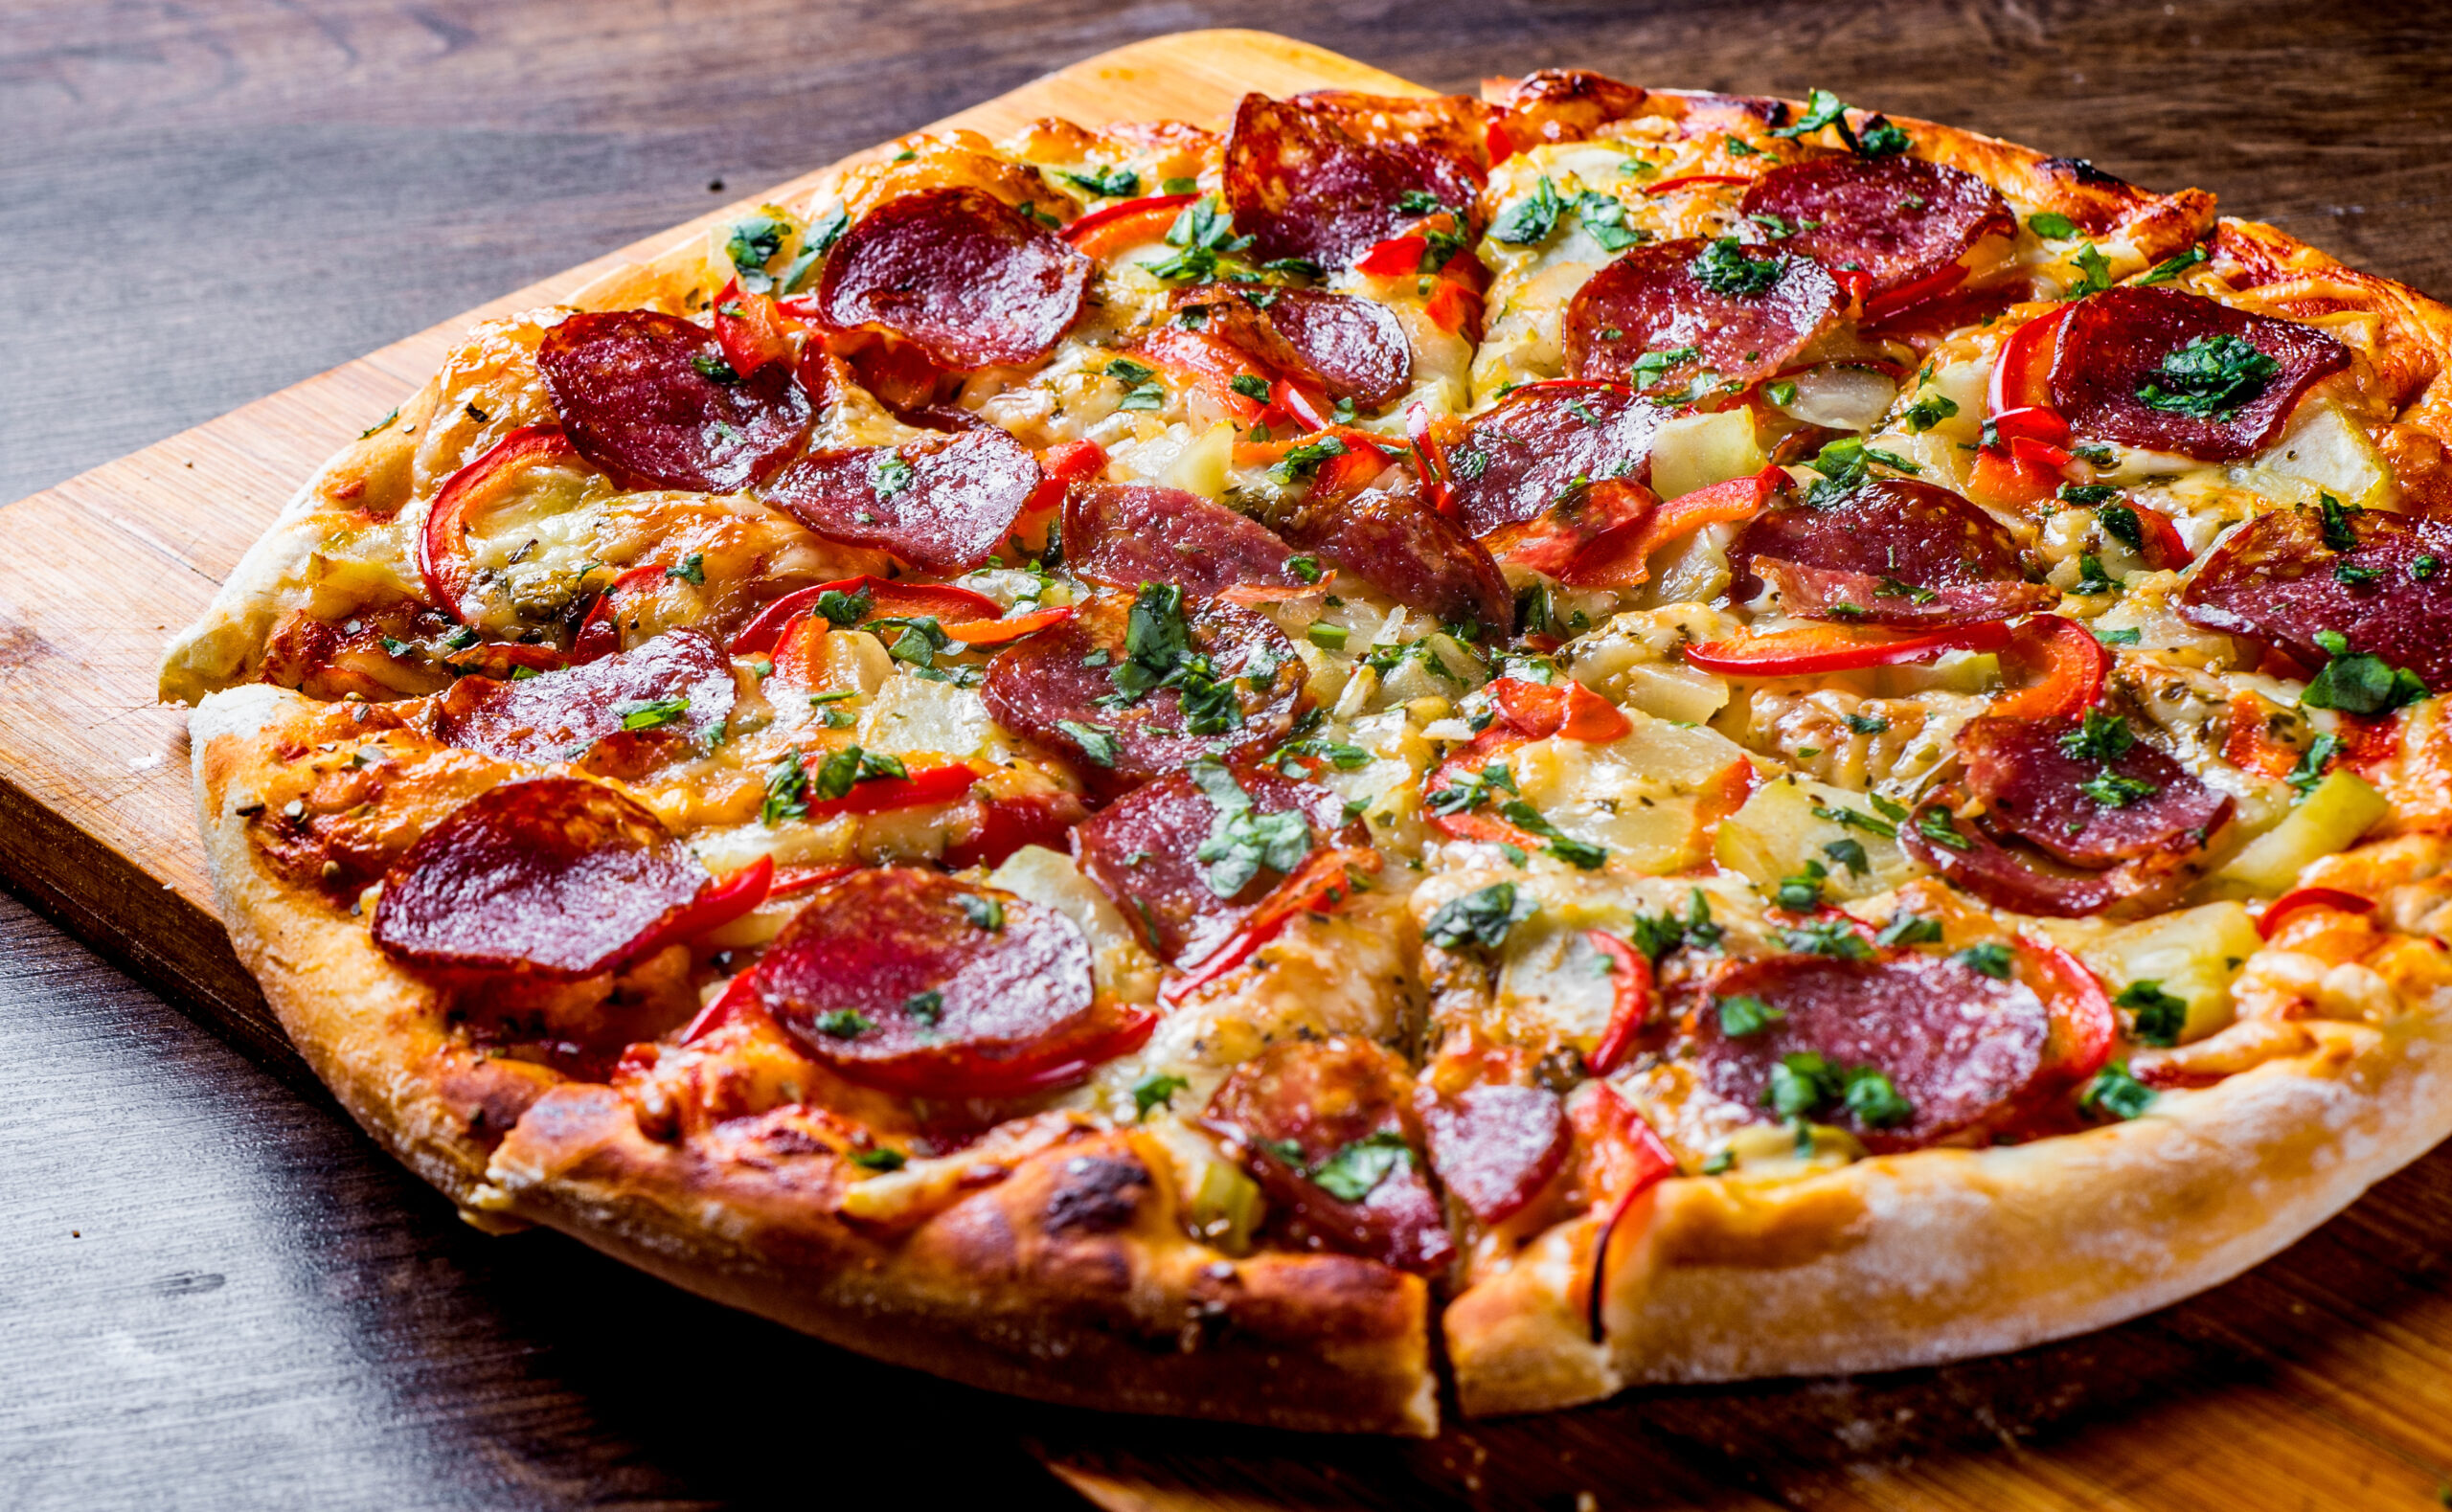 Pepperoni Pizza with Mozzarella cheese, salami, pepper.